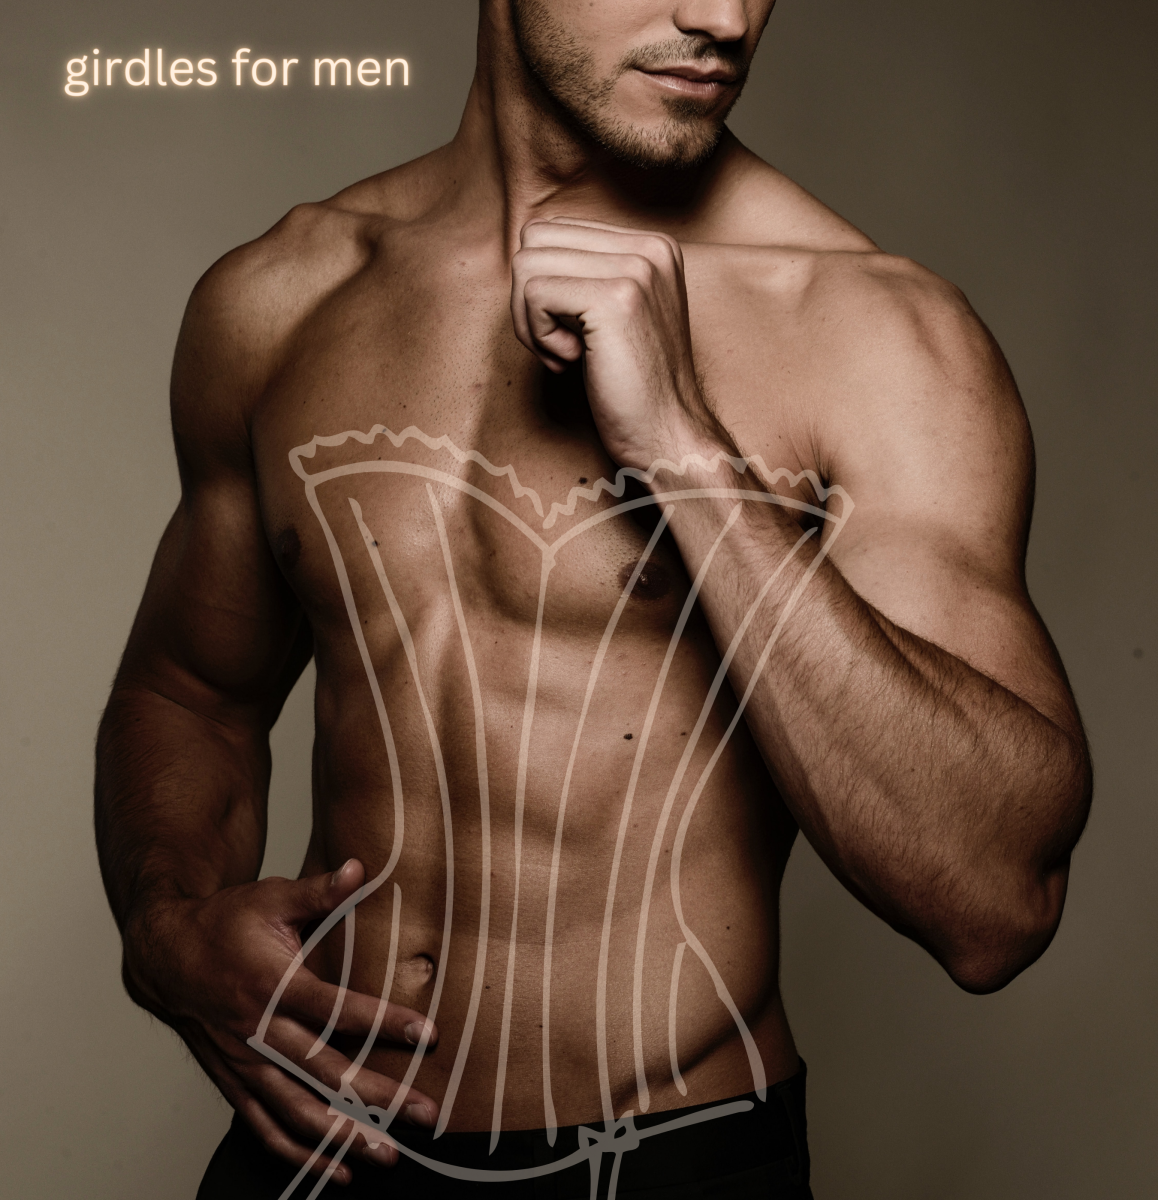 Gorgeous Girdles for Men